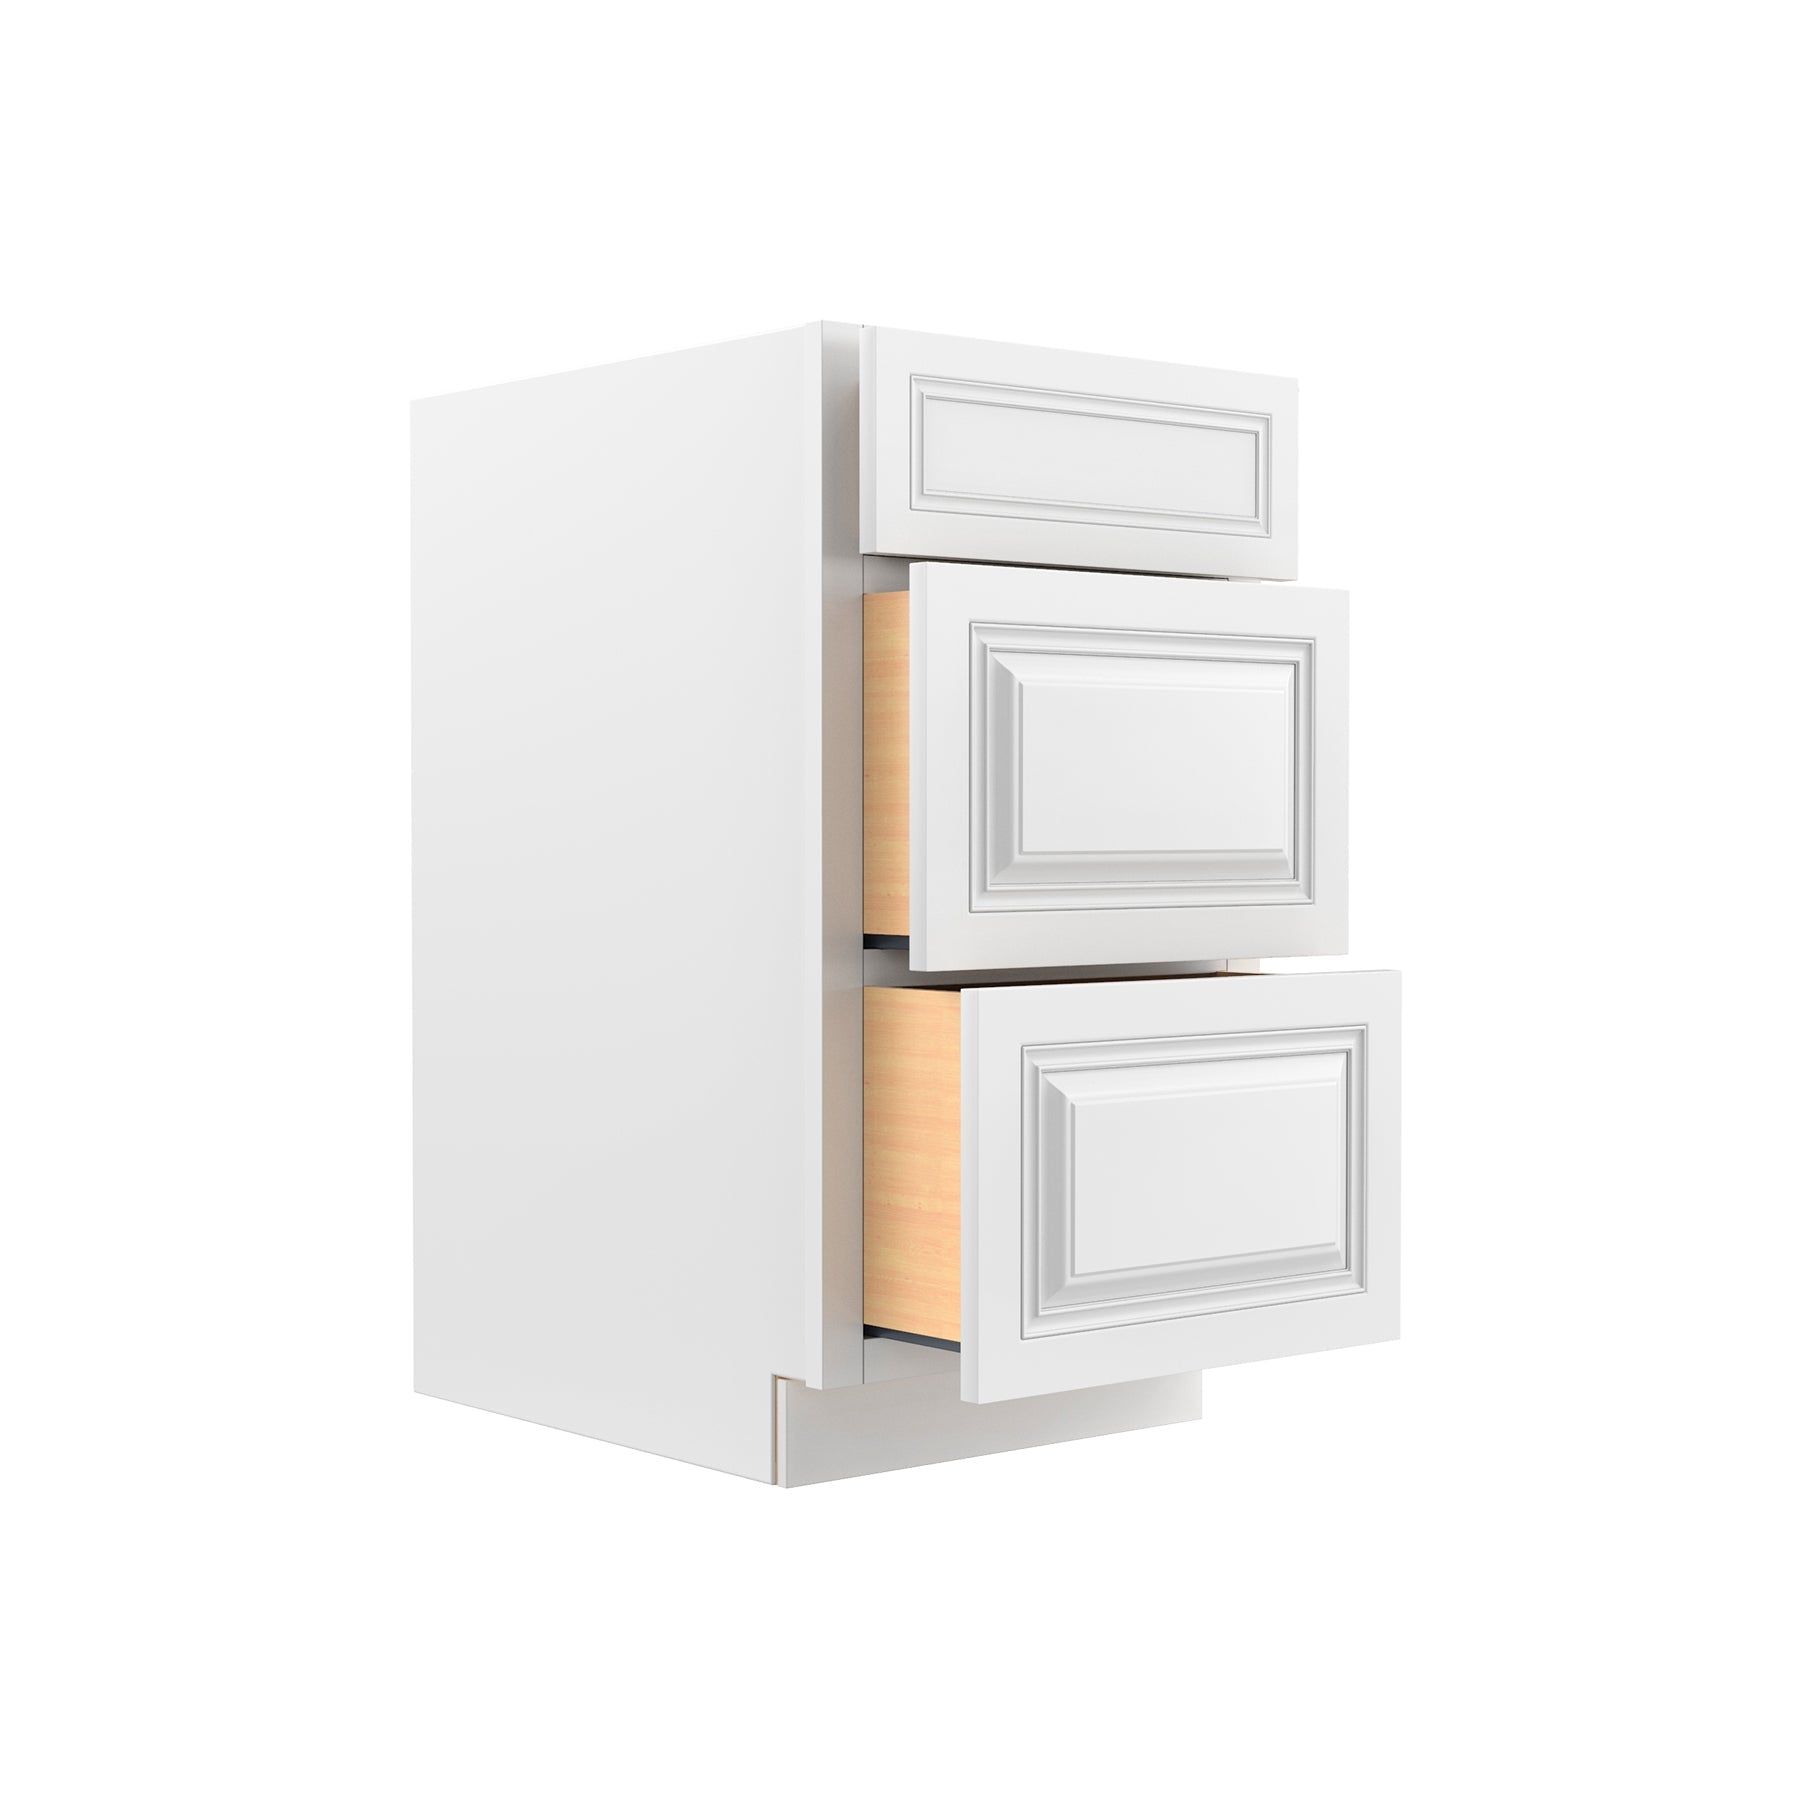 RTA - Park Avenue White - 3 Drawer Base Cabinet | 18"W x 34.5"H x 24"D